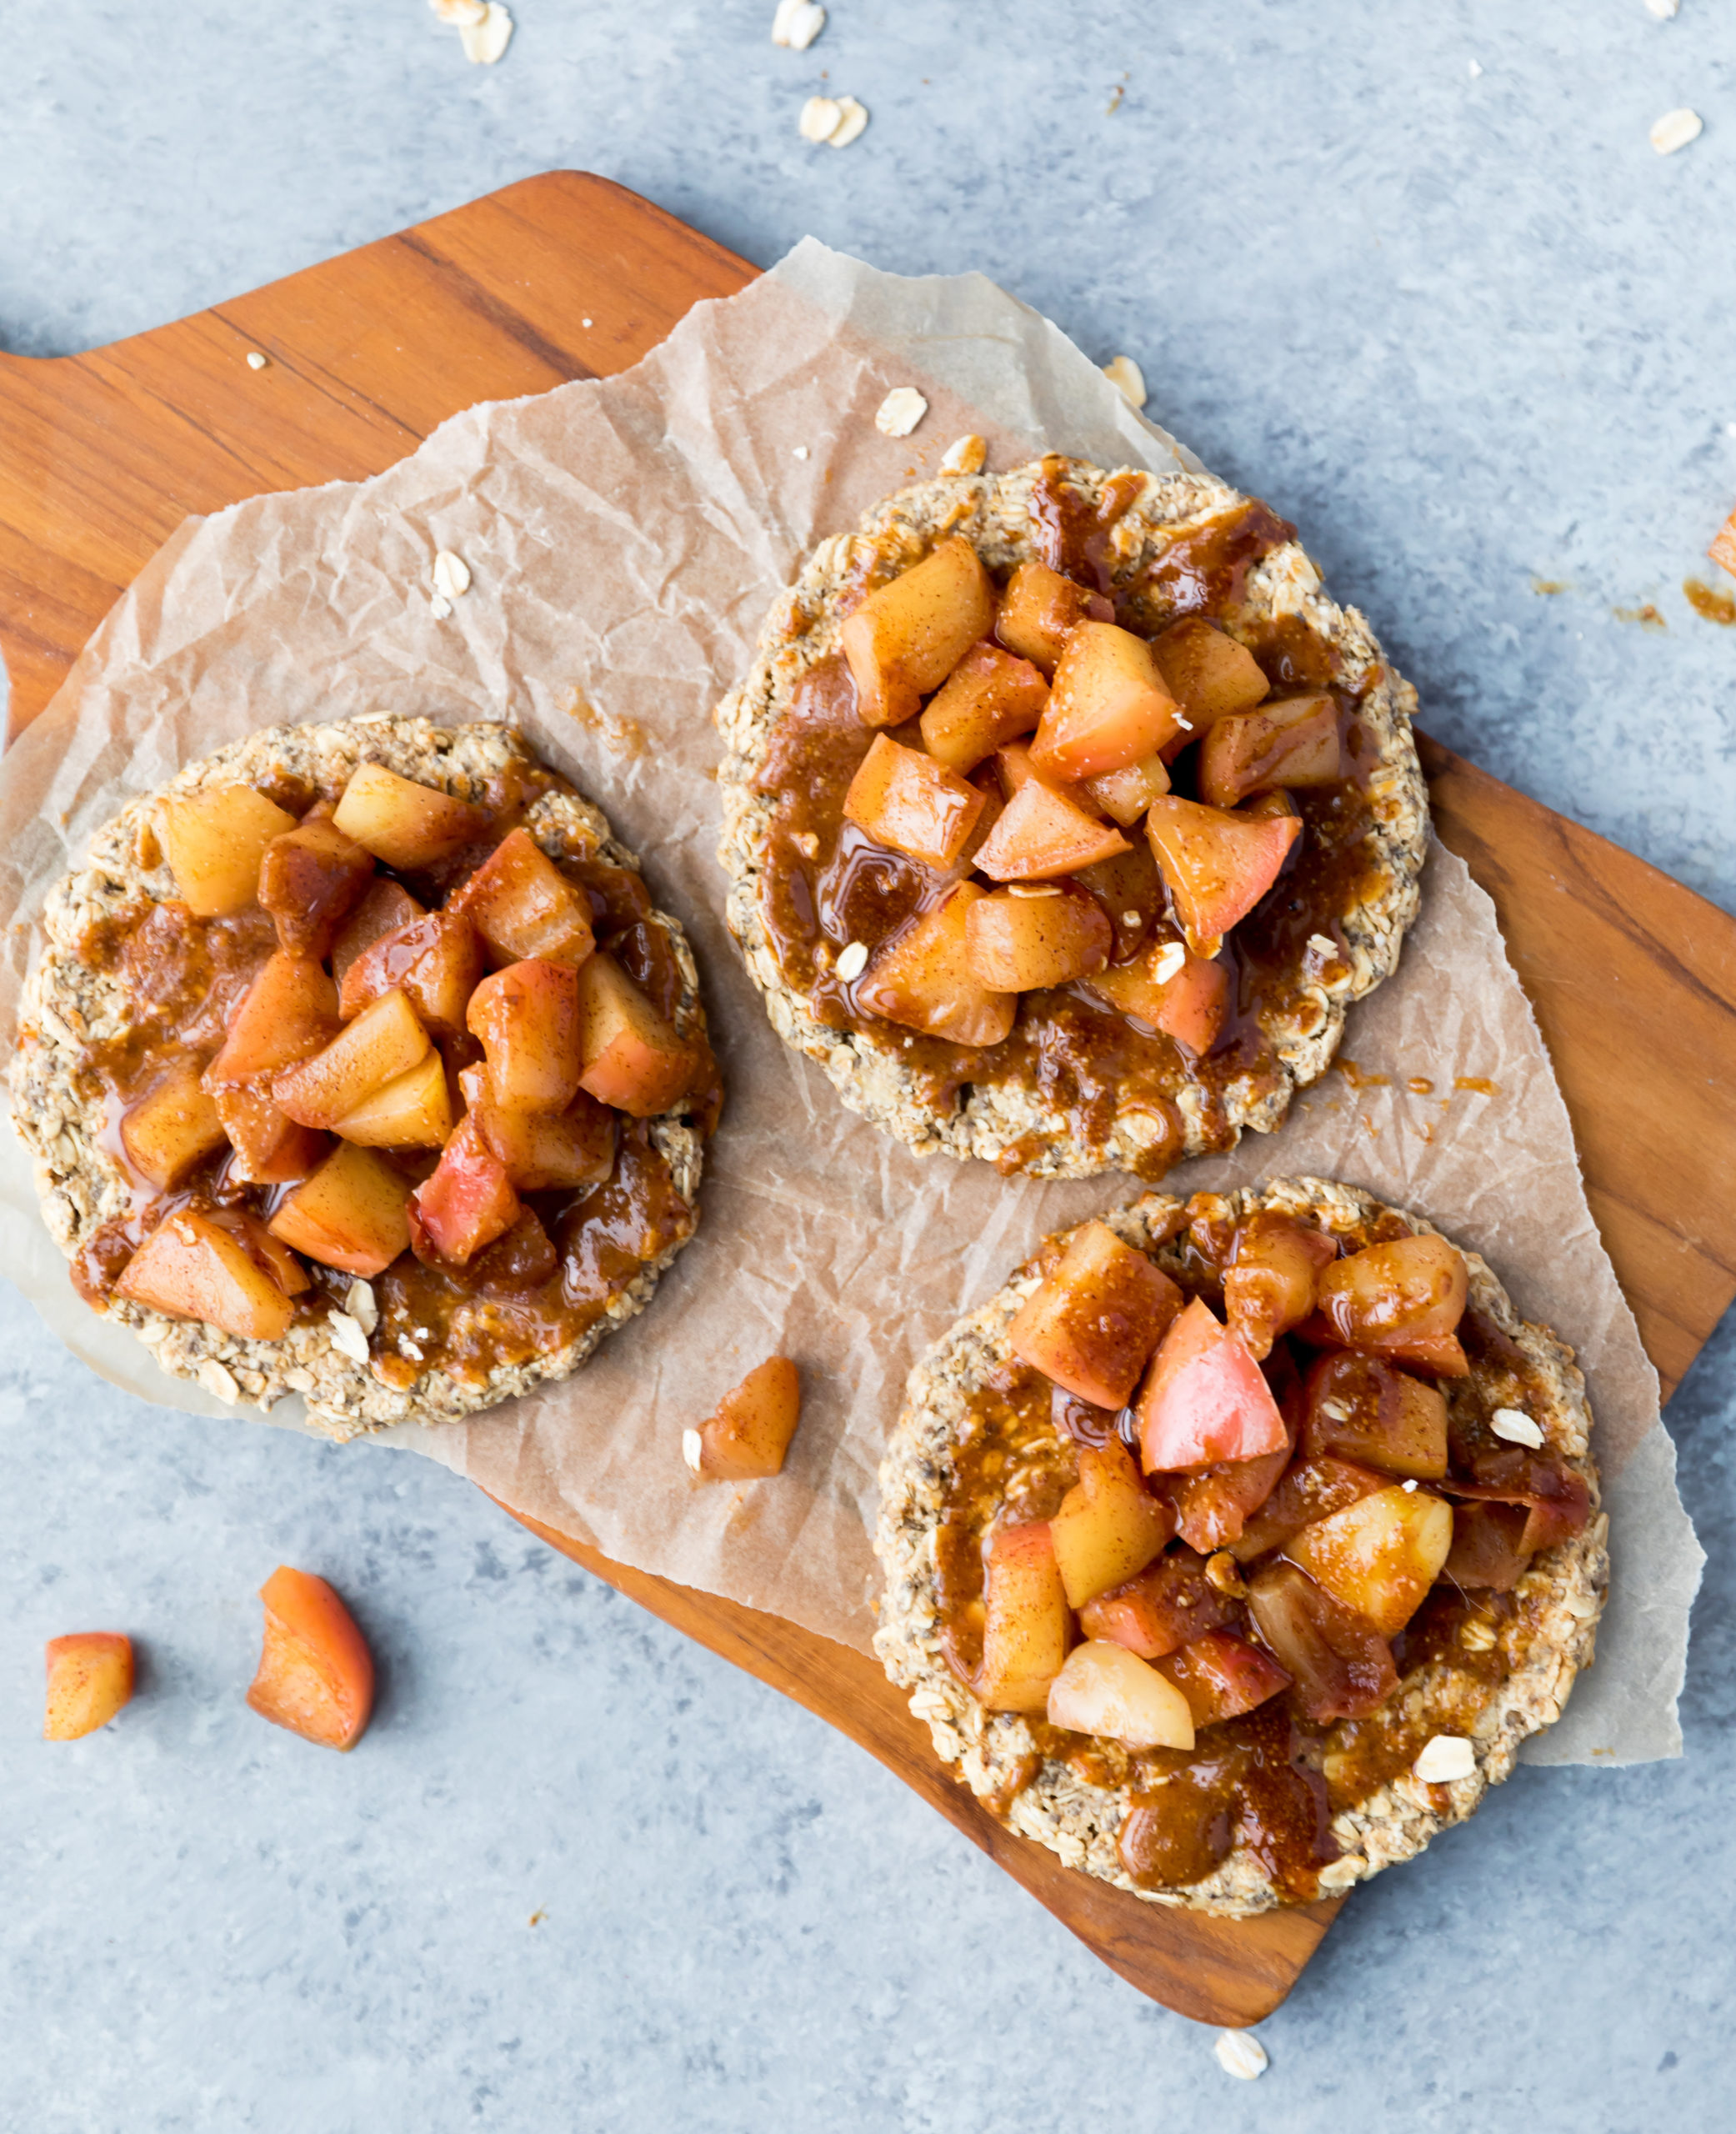 vegan gluten free breakfast oat pizza with caramel apples